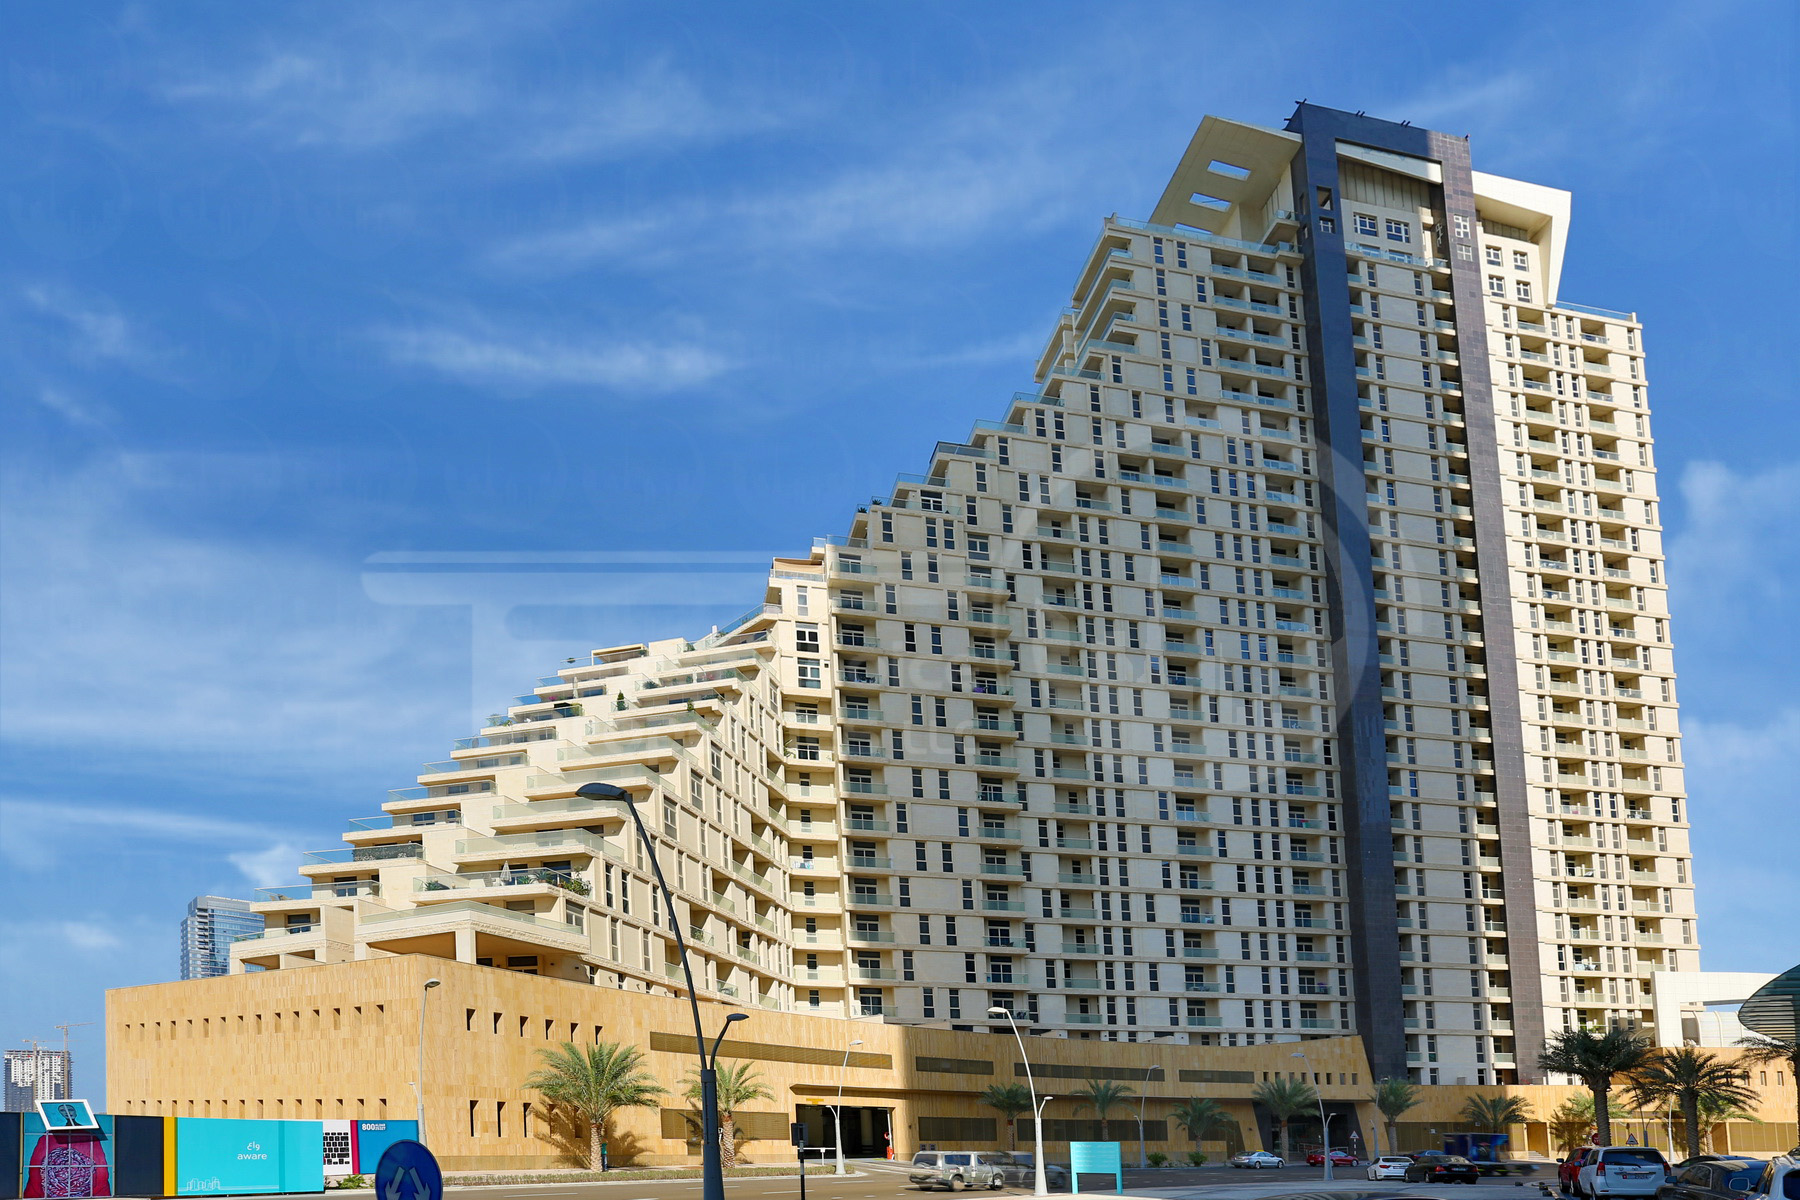 Studio - 1BR - 2BR - 3BR - 4BR Apartment - Abu Dhabi - UAE - Al Reem Island - Mangrove Place - Outside View (13) -  - Copy.JPG